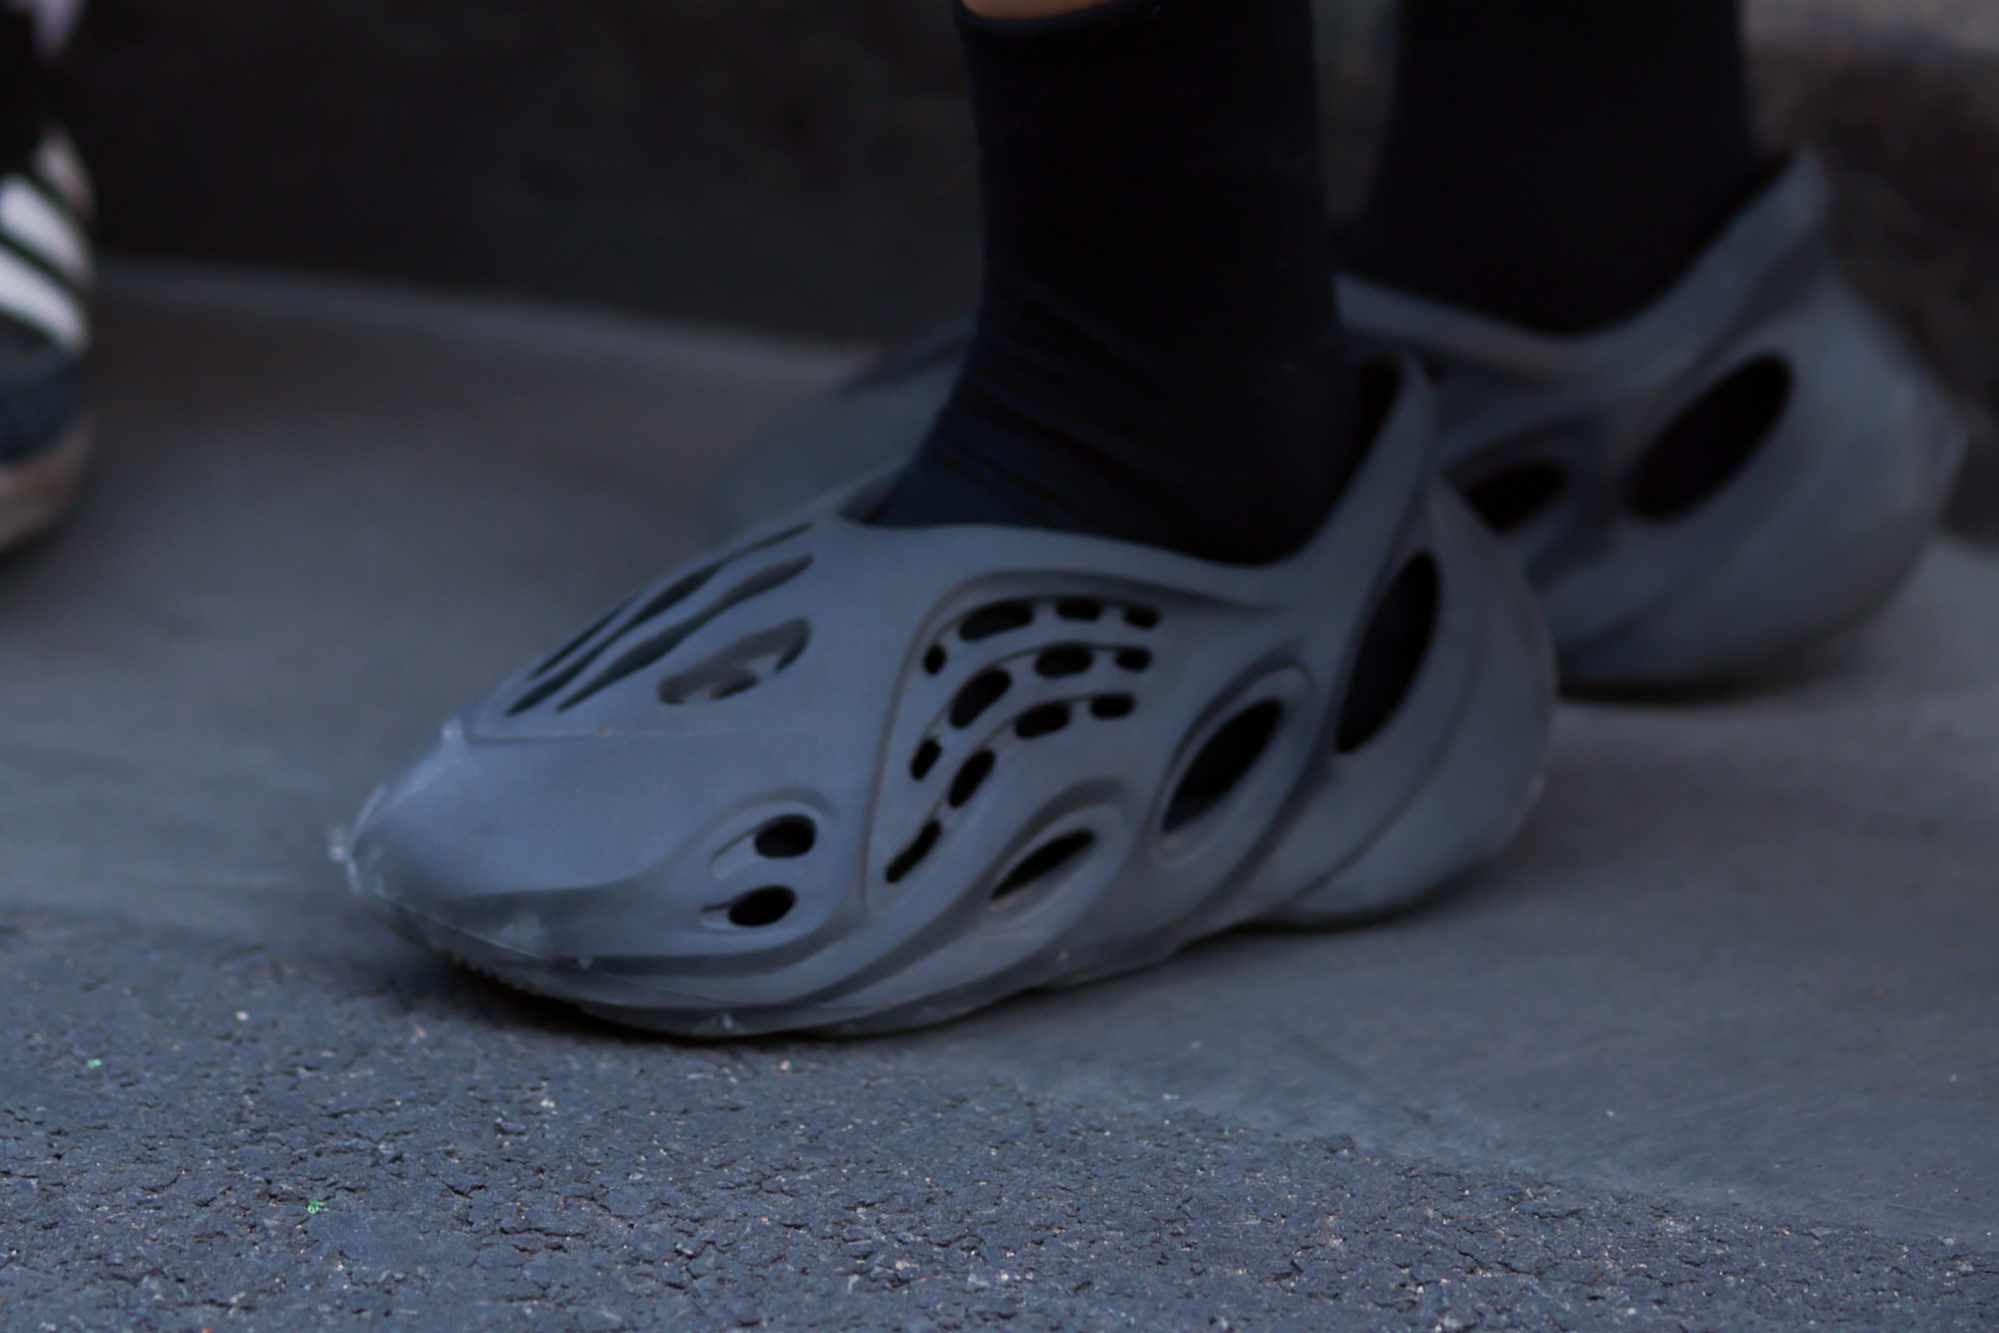 adidas YEEZY Foam Runner sneakers seen on-feet in grey